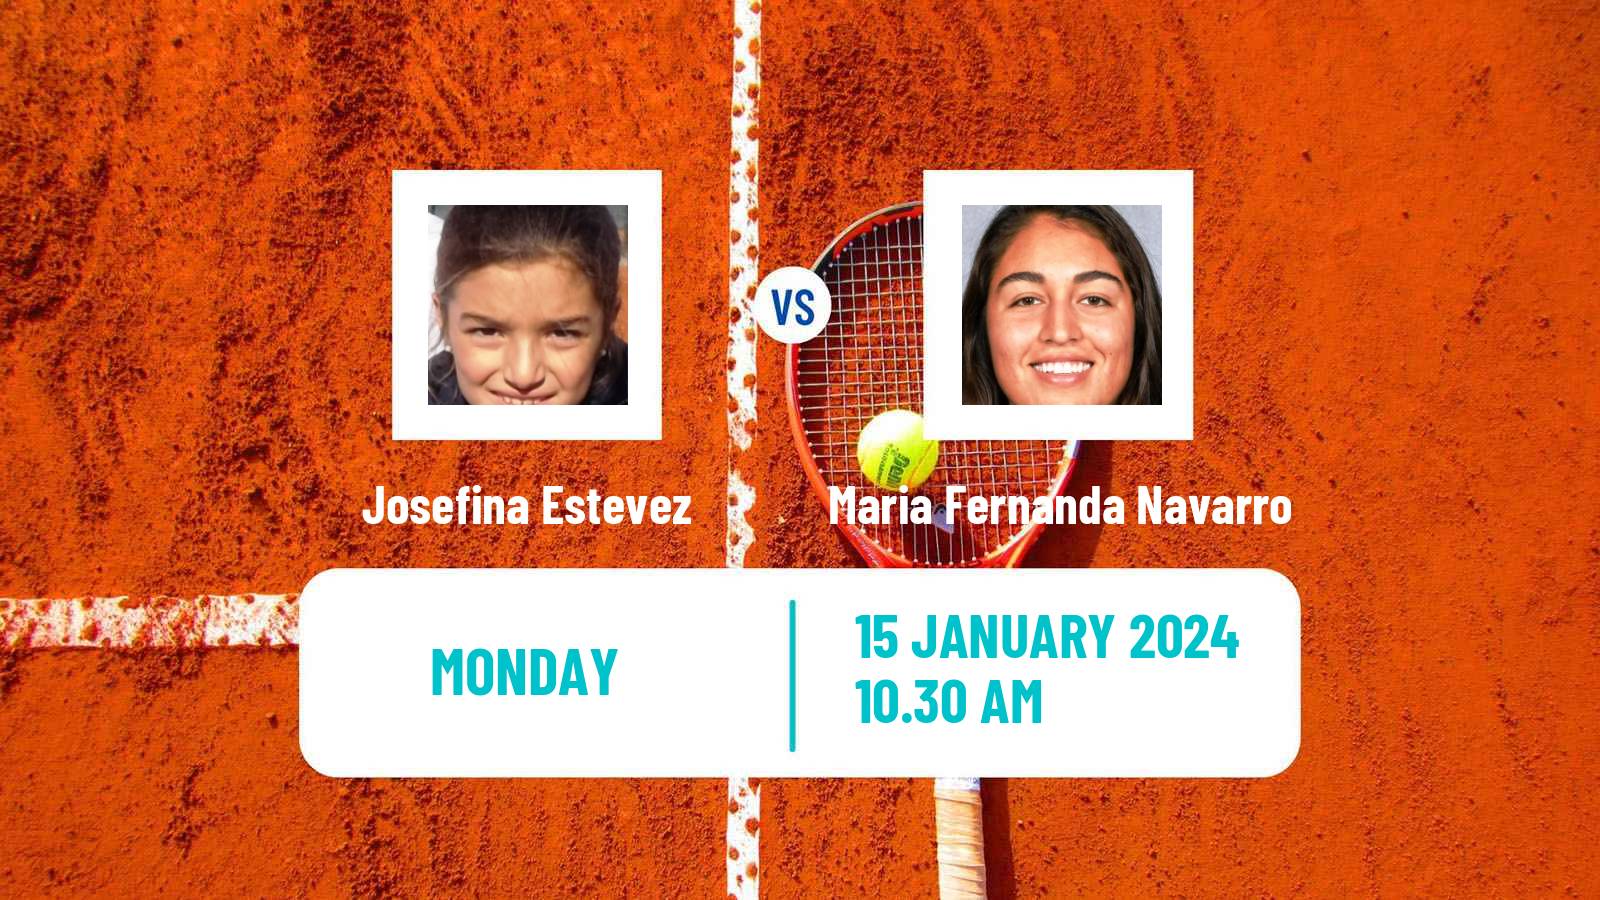 Tennis ITF W35 Buenos Aires Women Josefina Estevez - Maria Fernanda Navarro